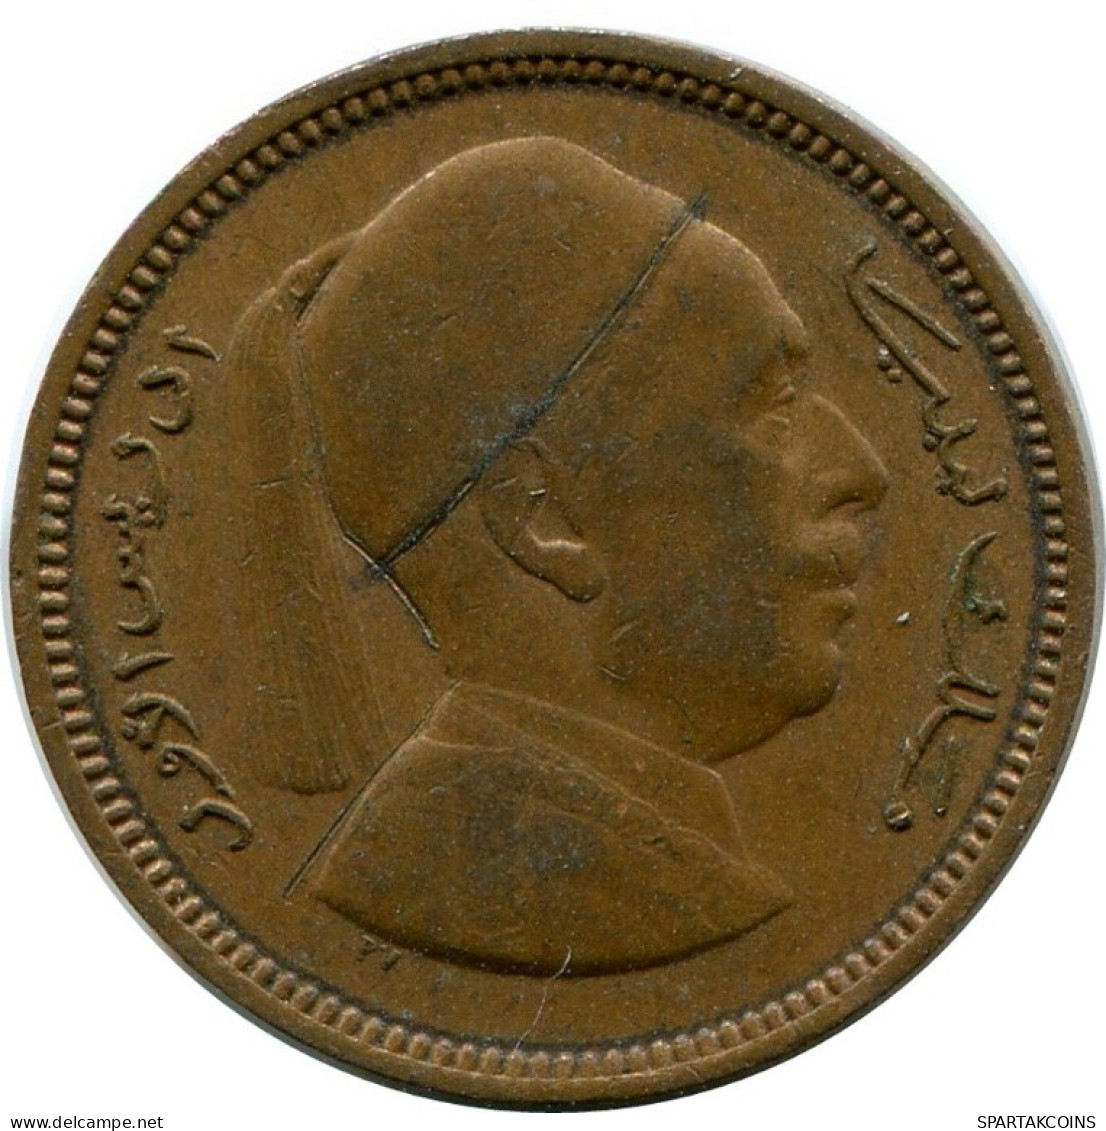 1 MILLIEME 1952 LIBYA Coin #AK328.U.A - Libië